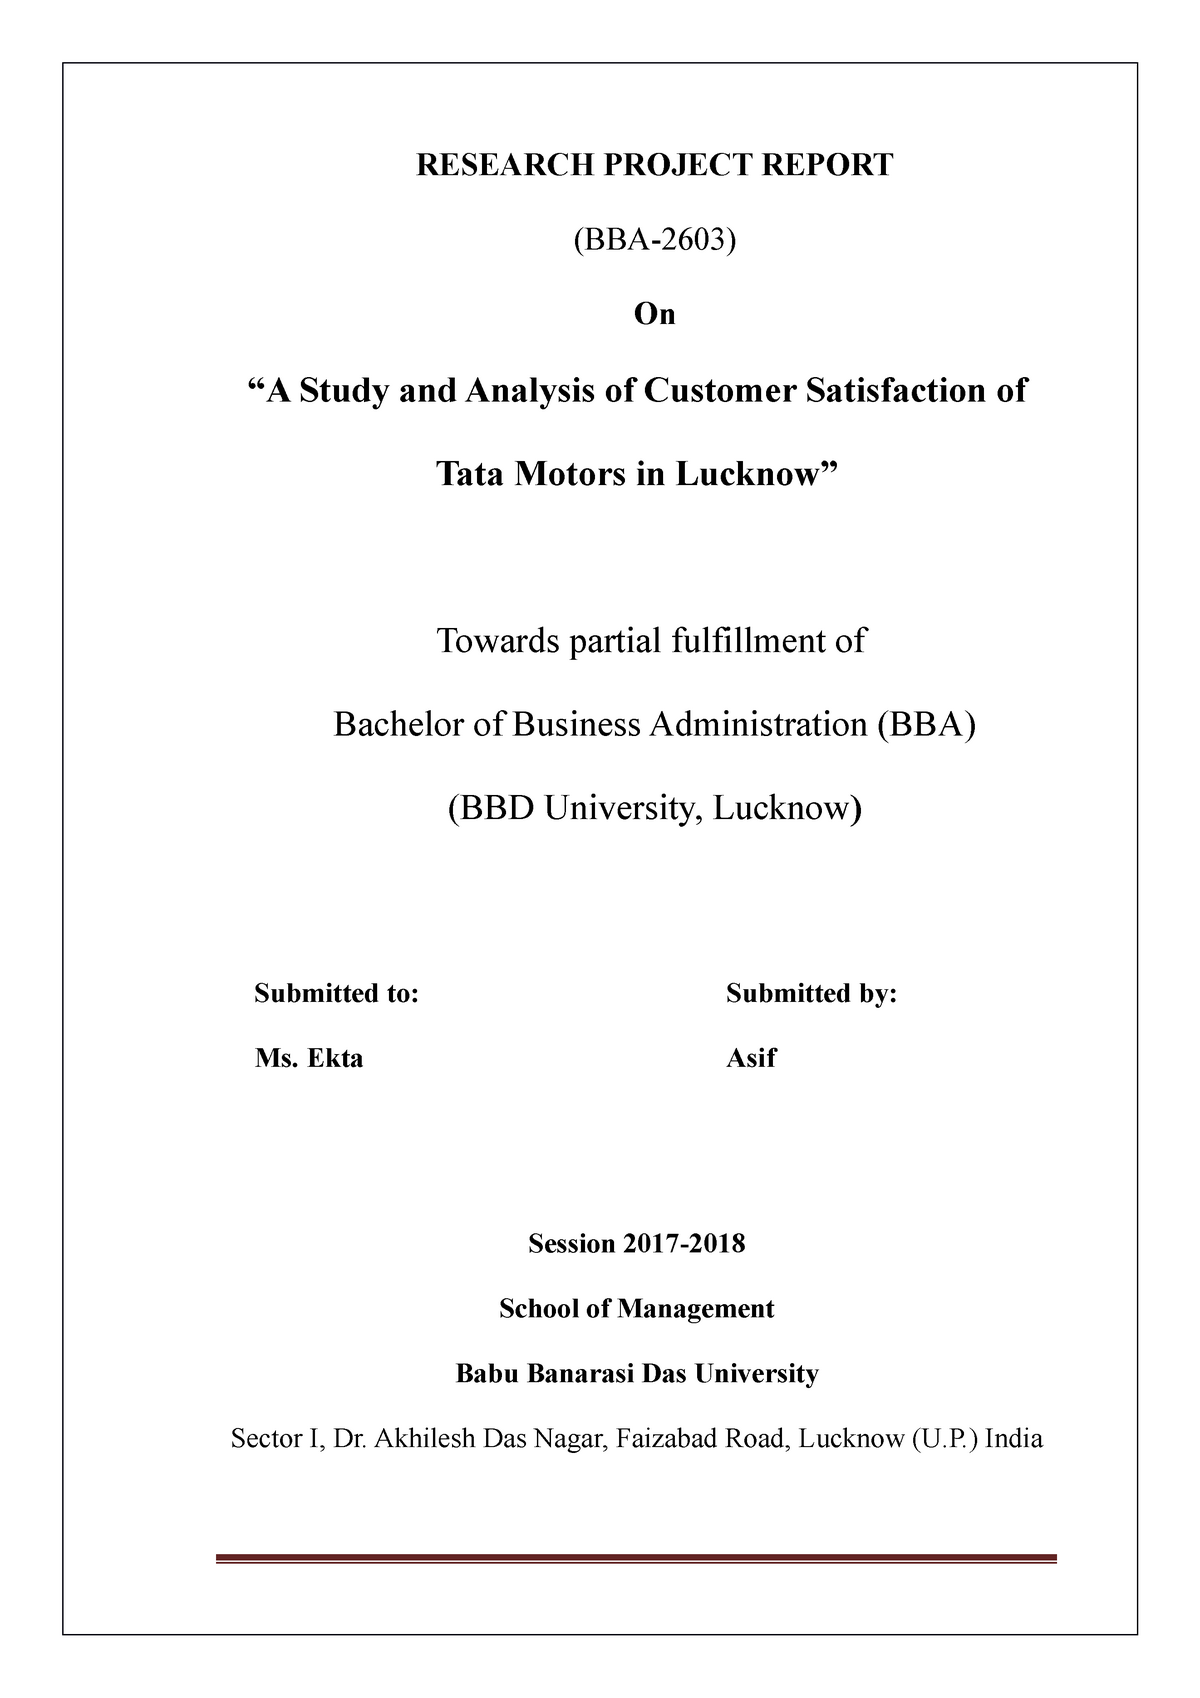 tata motors research report pdf